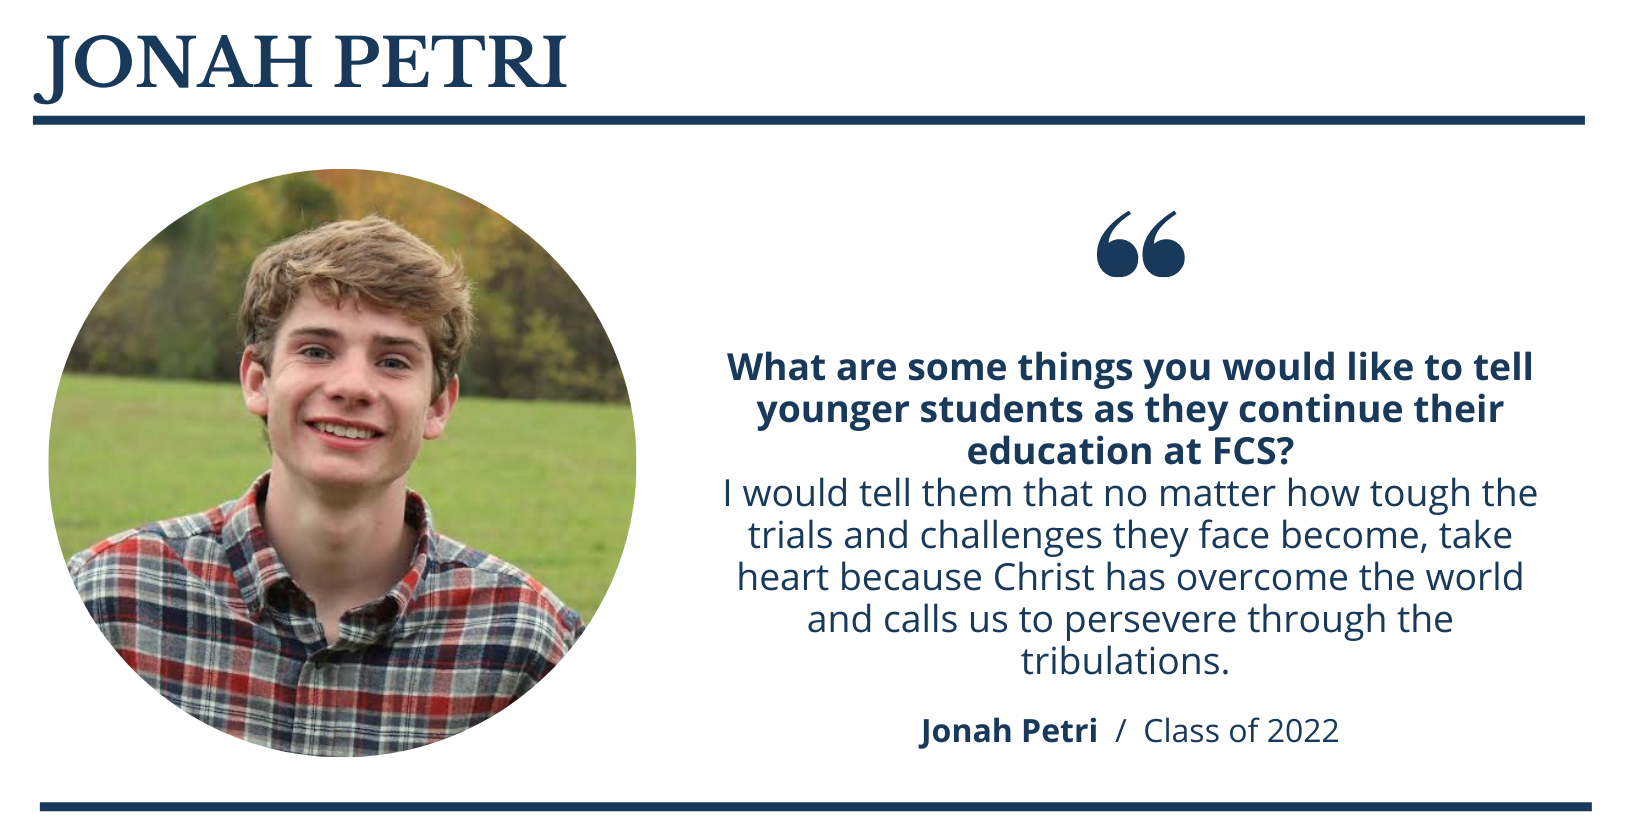 JONAH PETRI  |  Faith Christian School Class of 2022